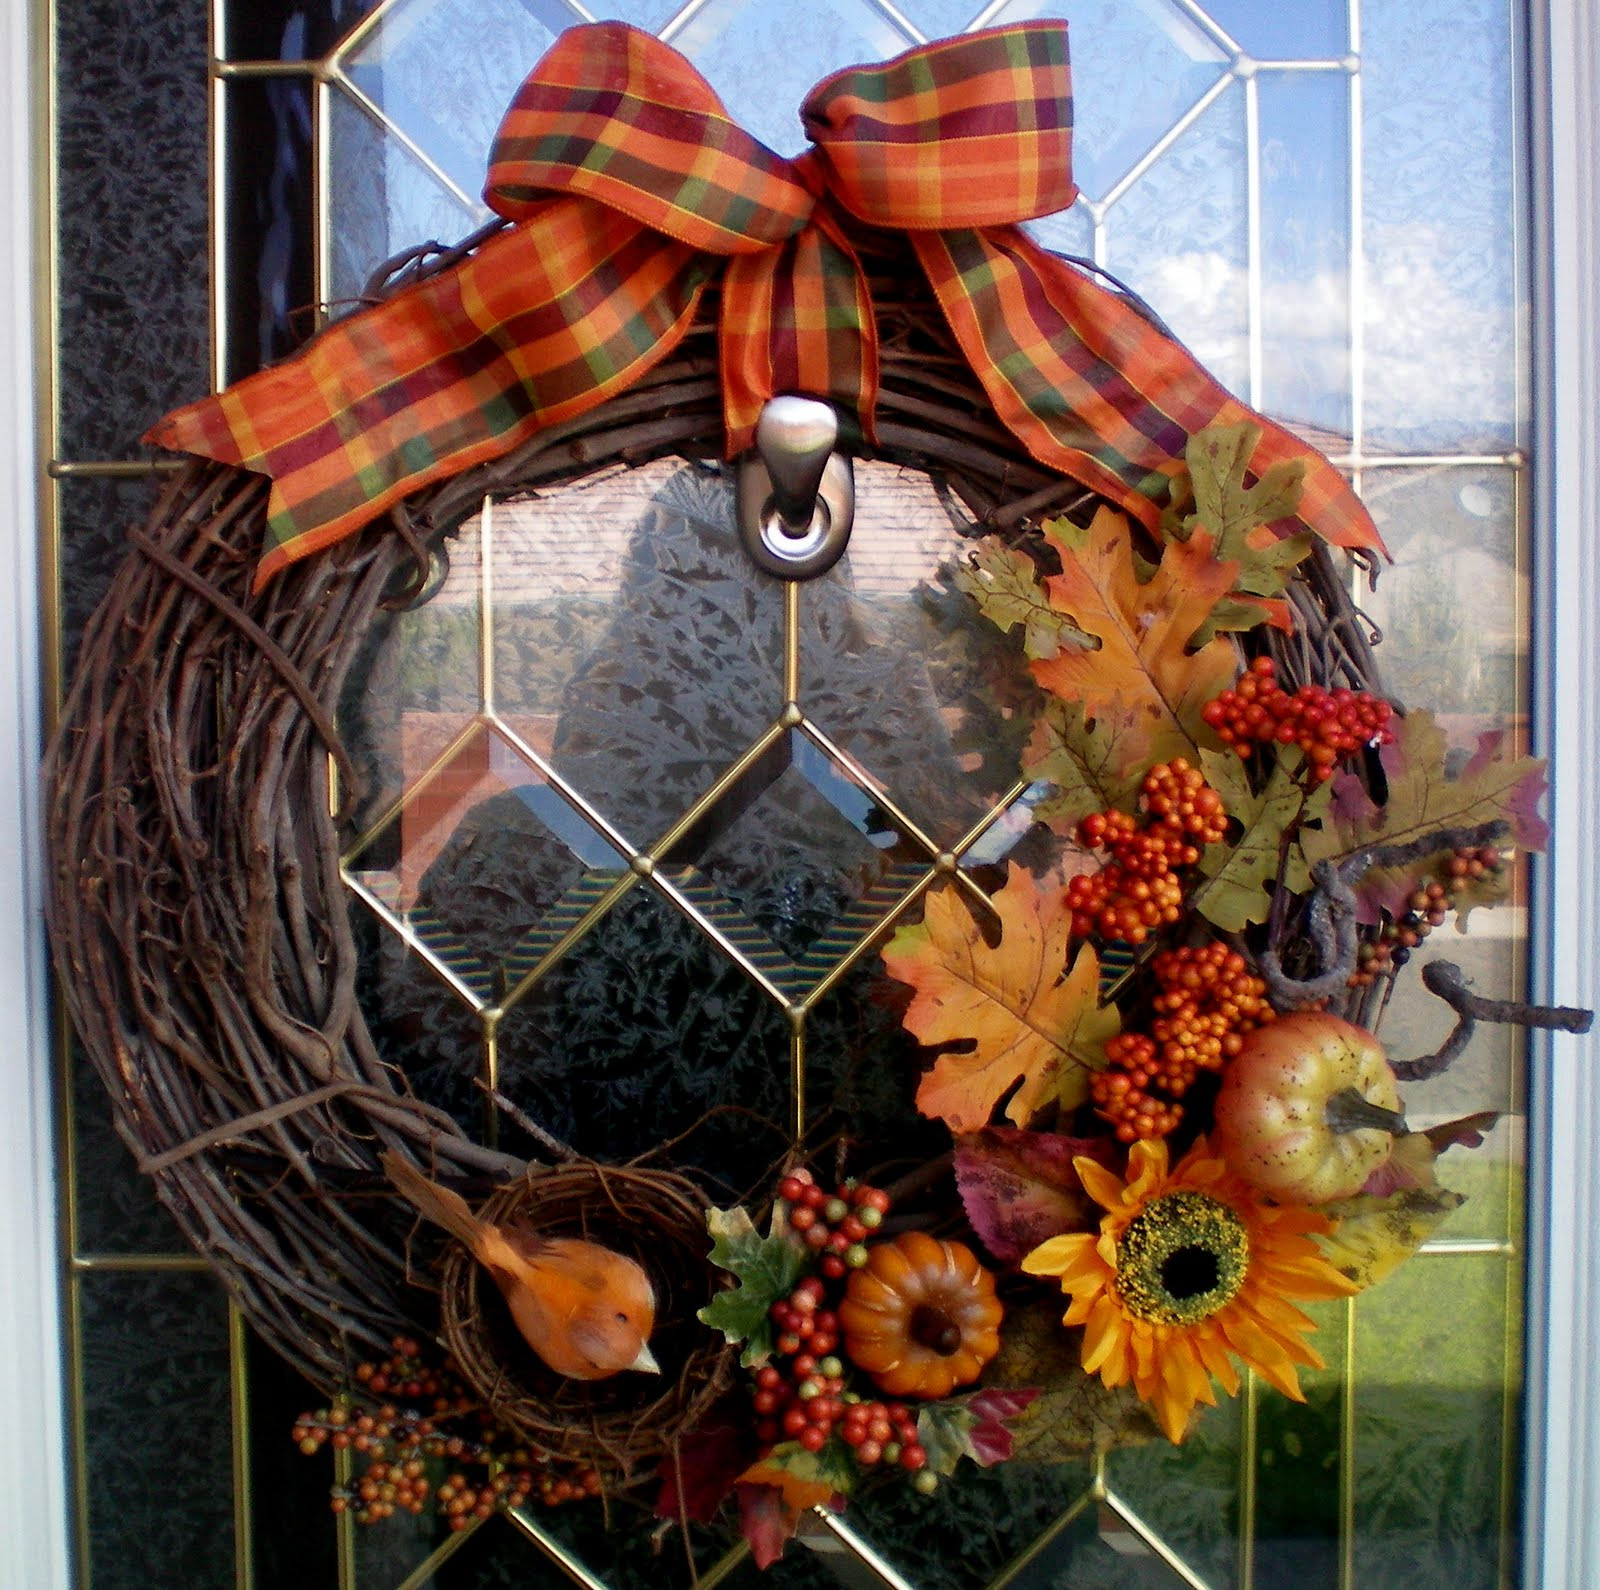 Best ideas about Fall Wreath DIY
. Save or Pin DIY FALL WREATH Craft O Maniac Now.